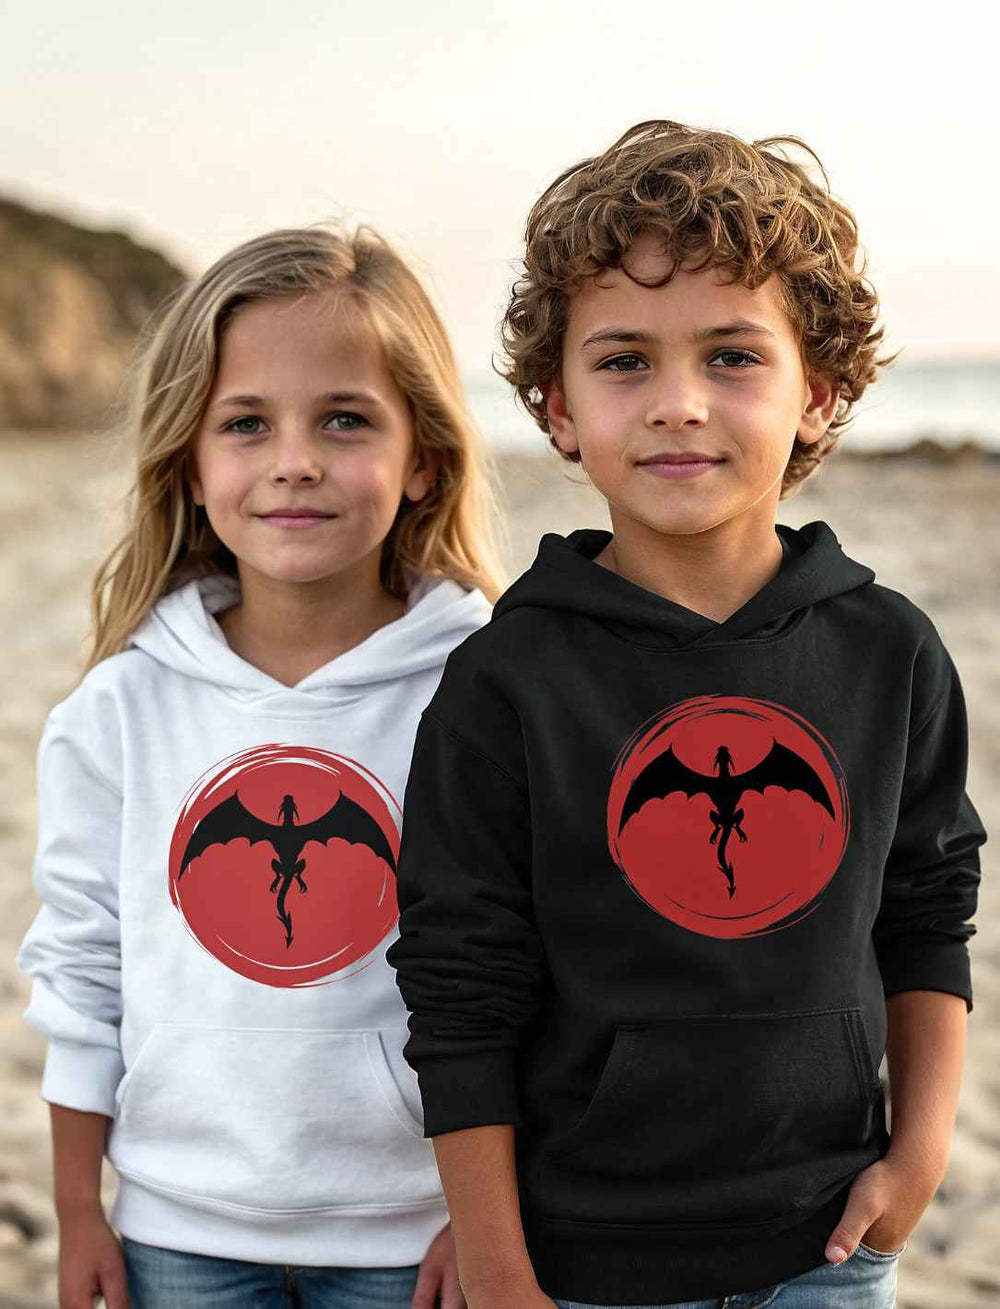 Zwei Kinder am Strand, das Mädchen in einem weißen und der Junge in einem schwarzen 'Saga of the Dragon' Bio-Hoodie, lächeln in die Kamera und präsentieren stolz die auffälligen Drachenmotive auf ihrer Kleidung.